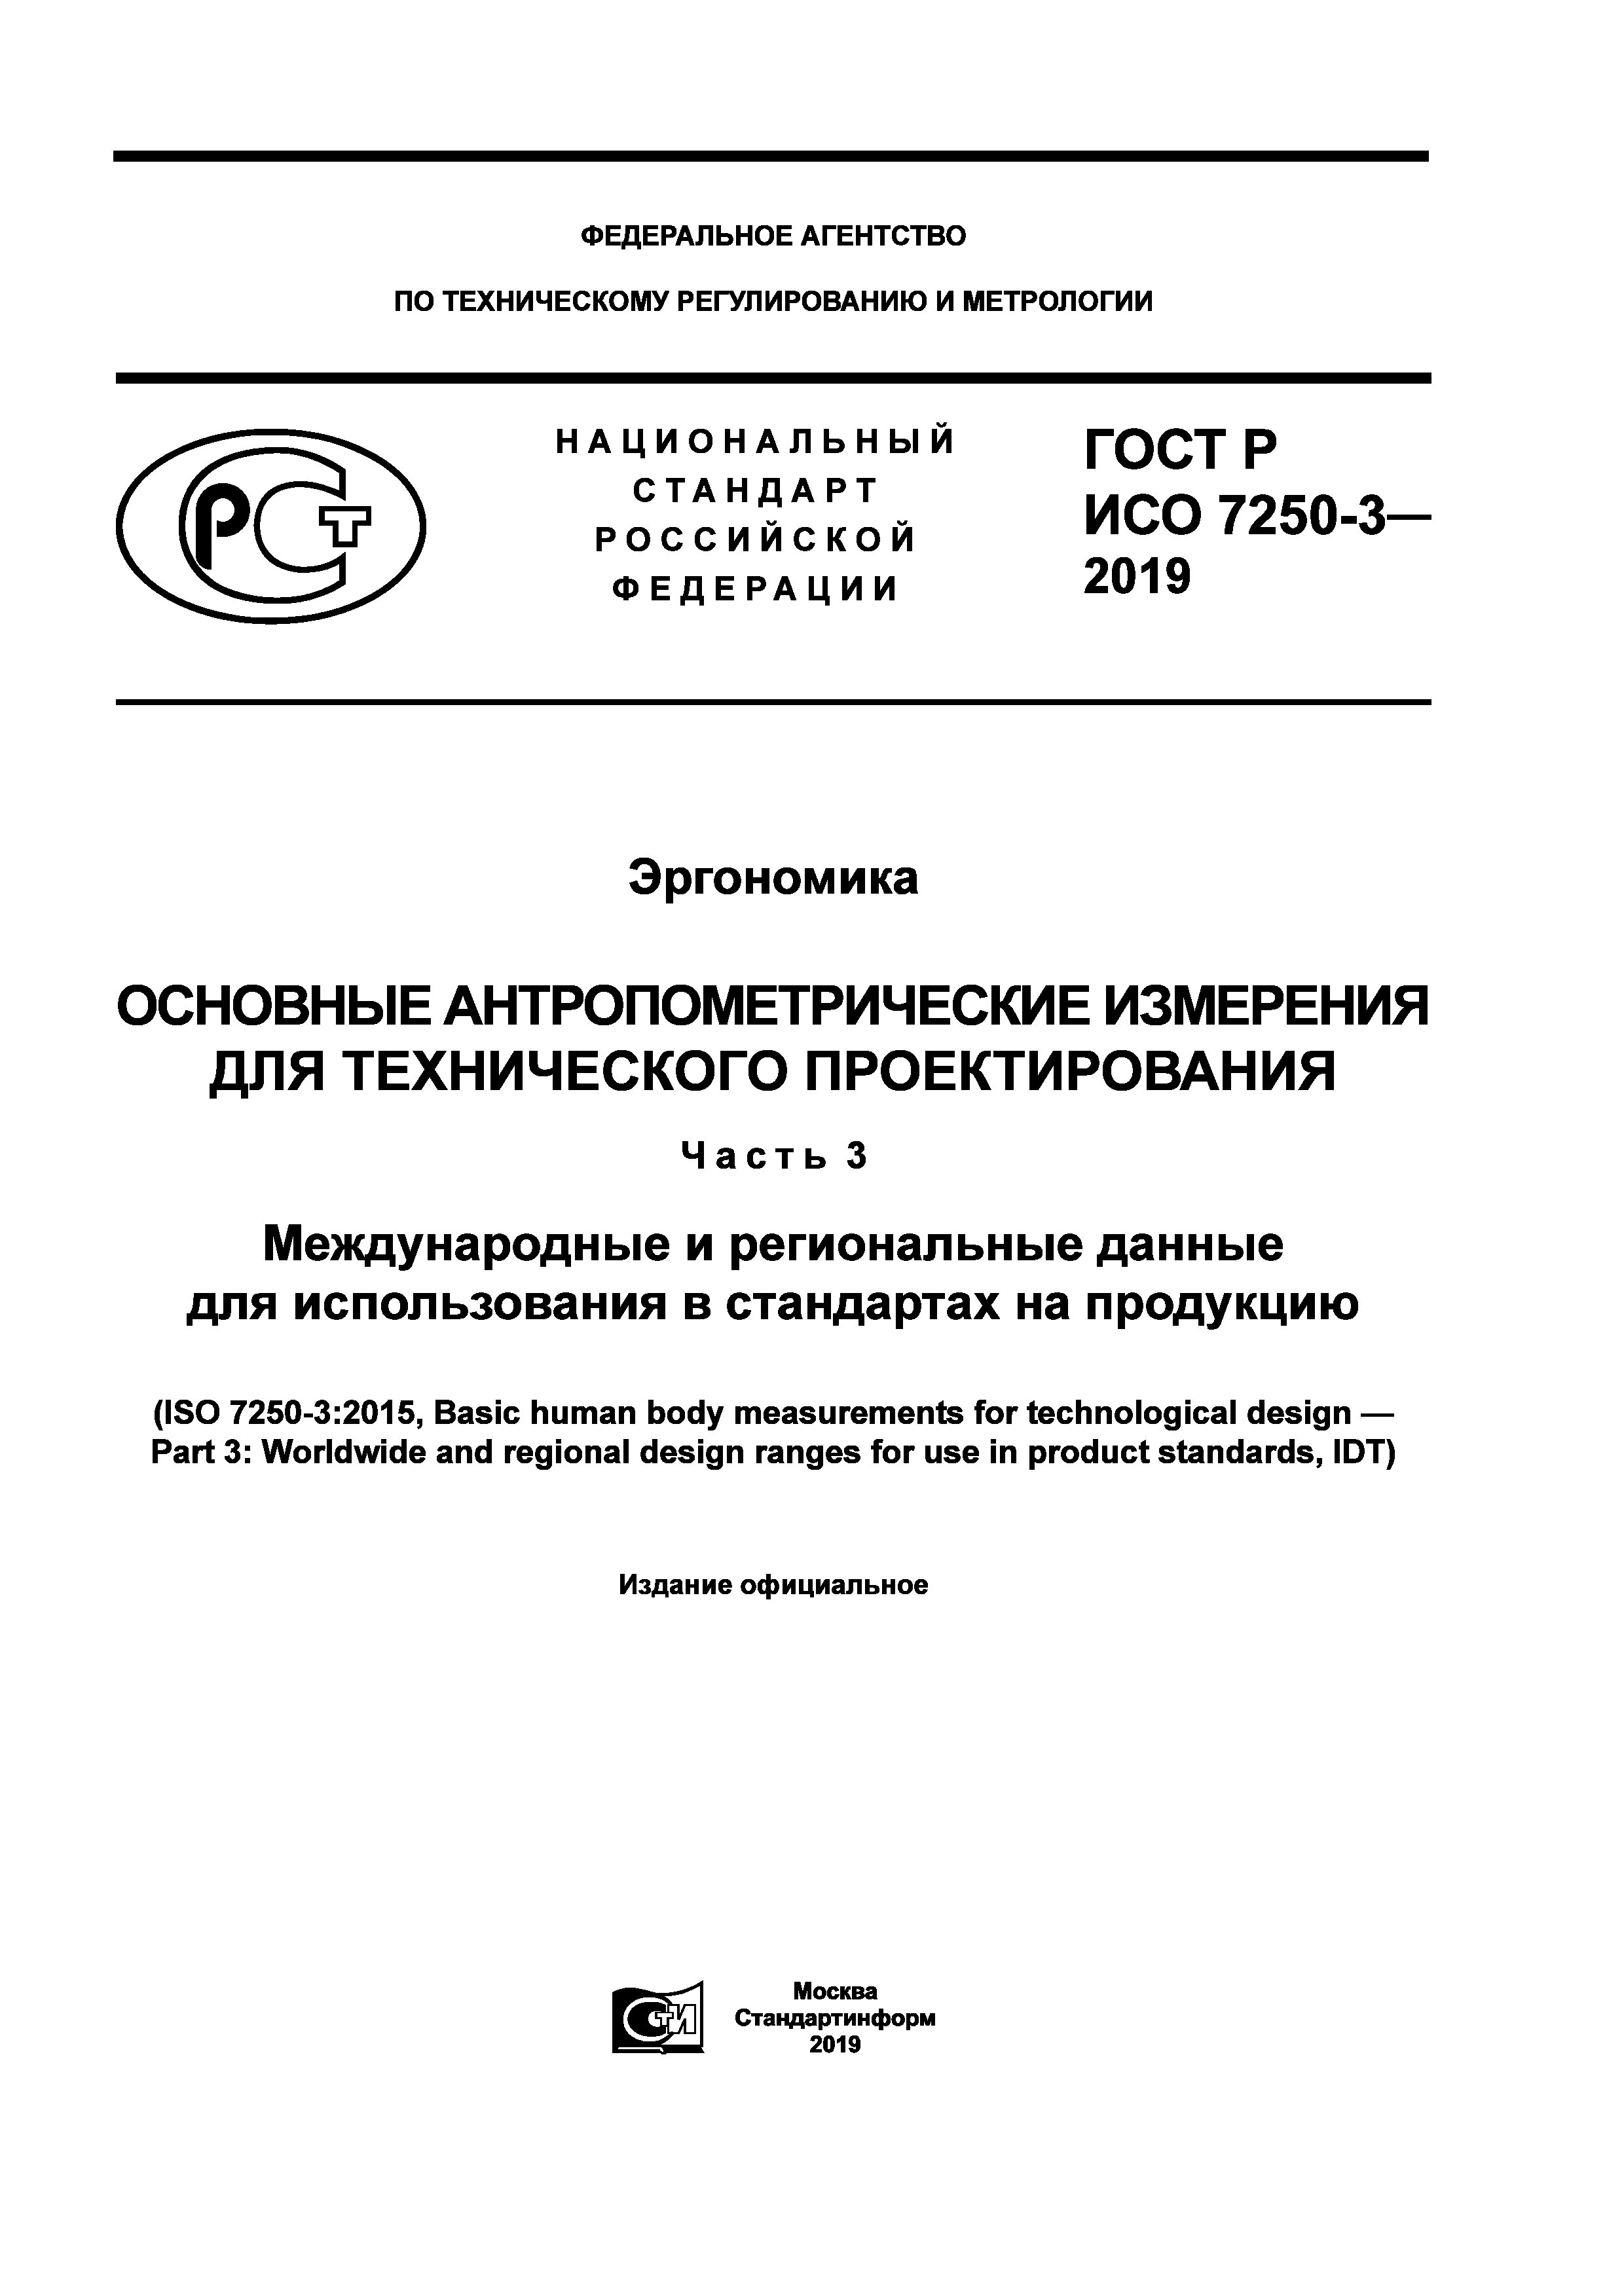 ГОСТ Р ИСО 7250-3-2019